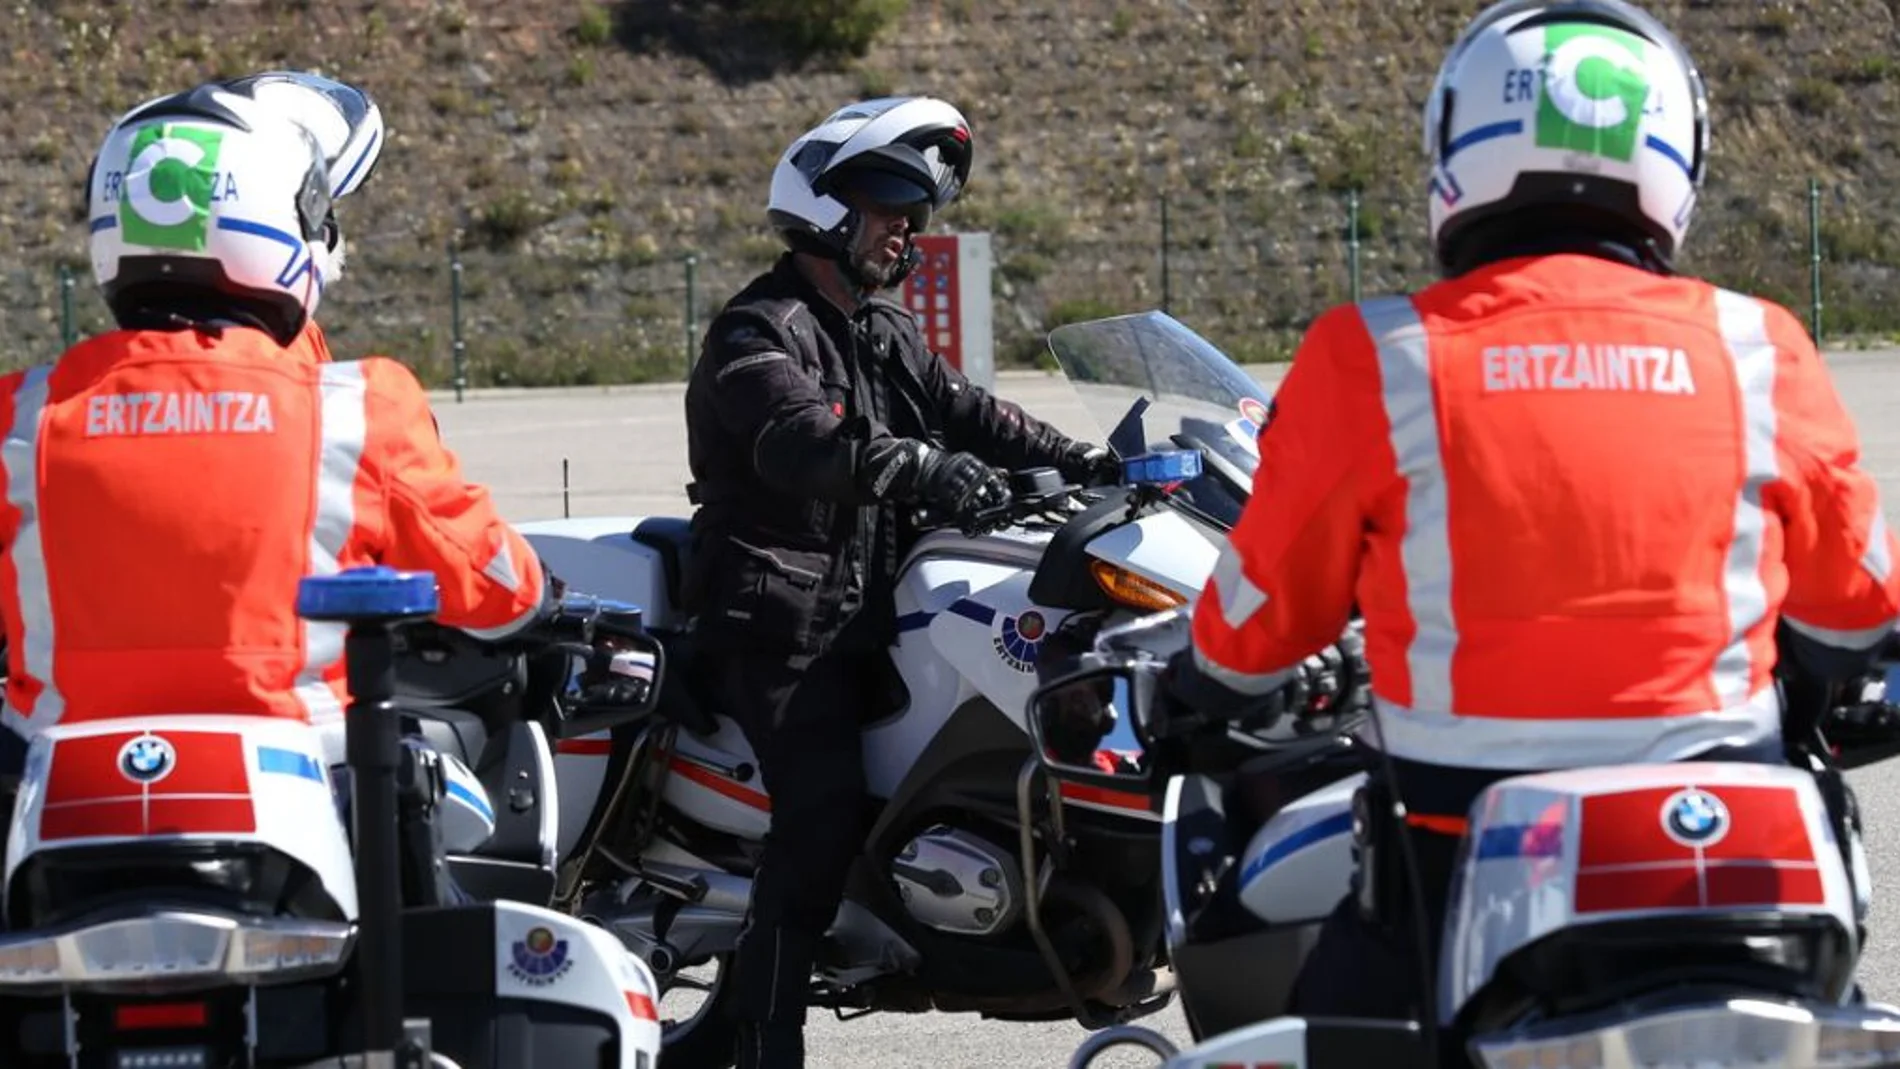 Agentes de la Ertzaintza solicitan motos menos pesadas